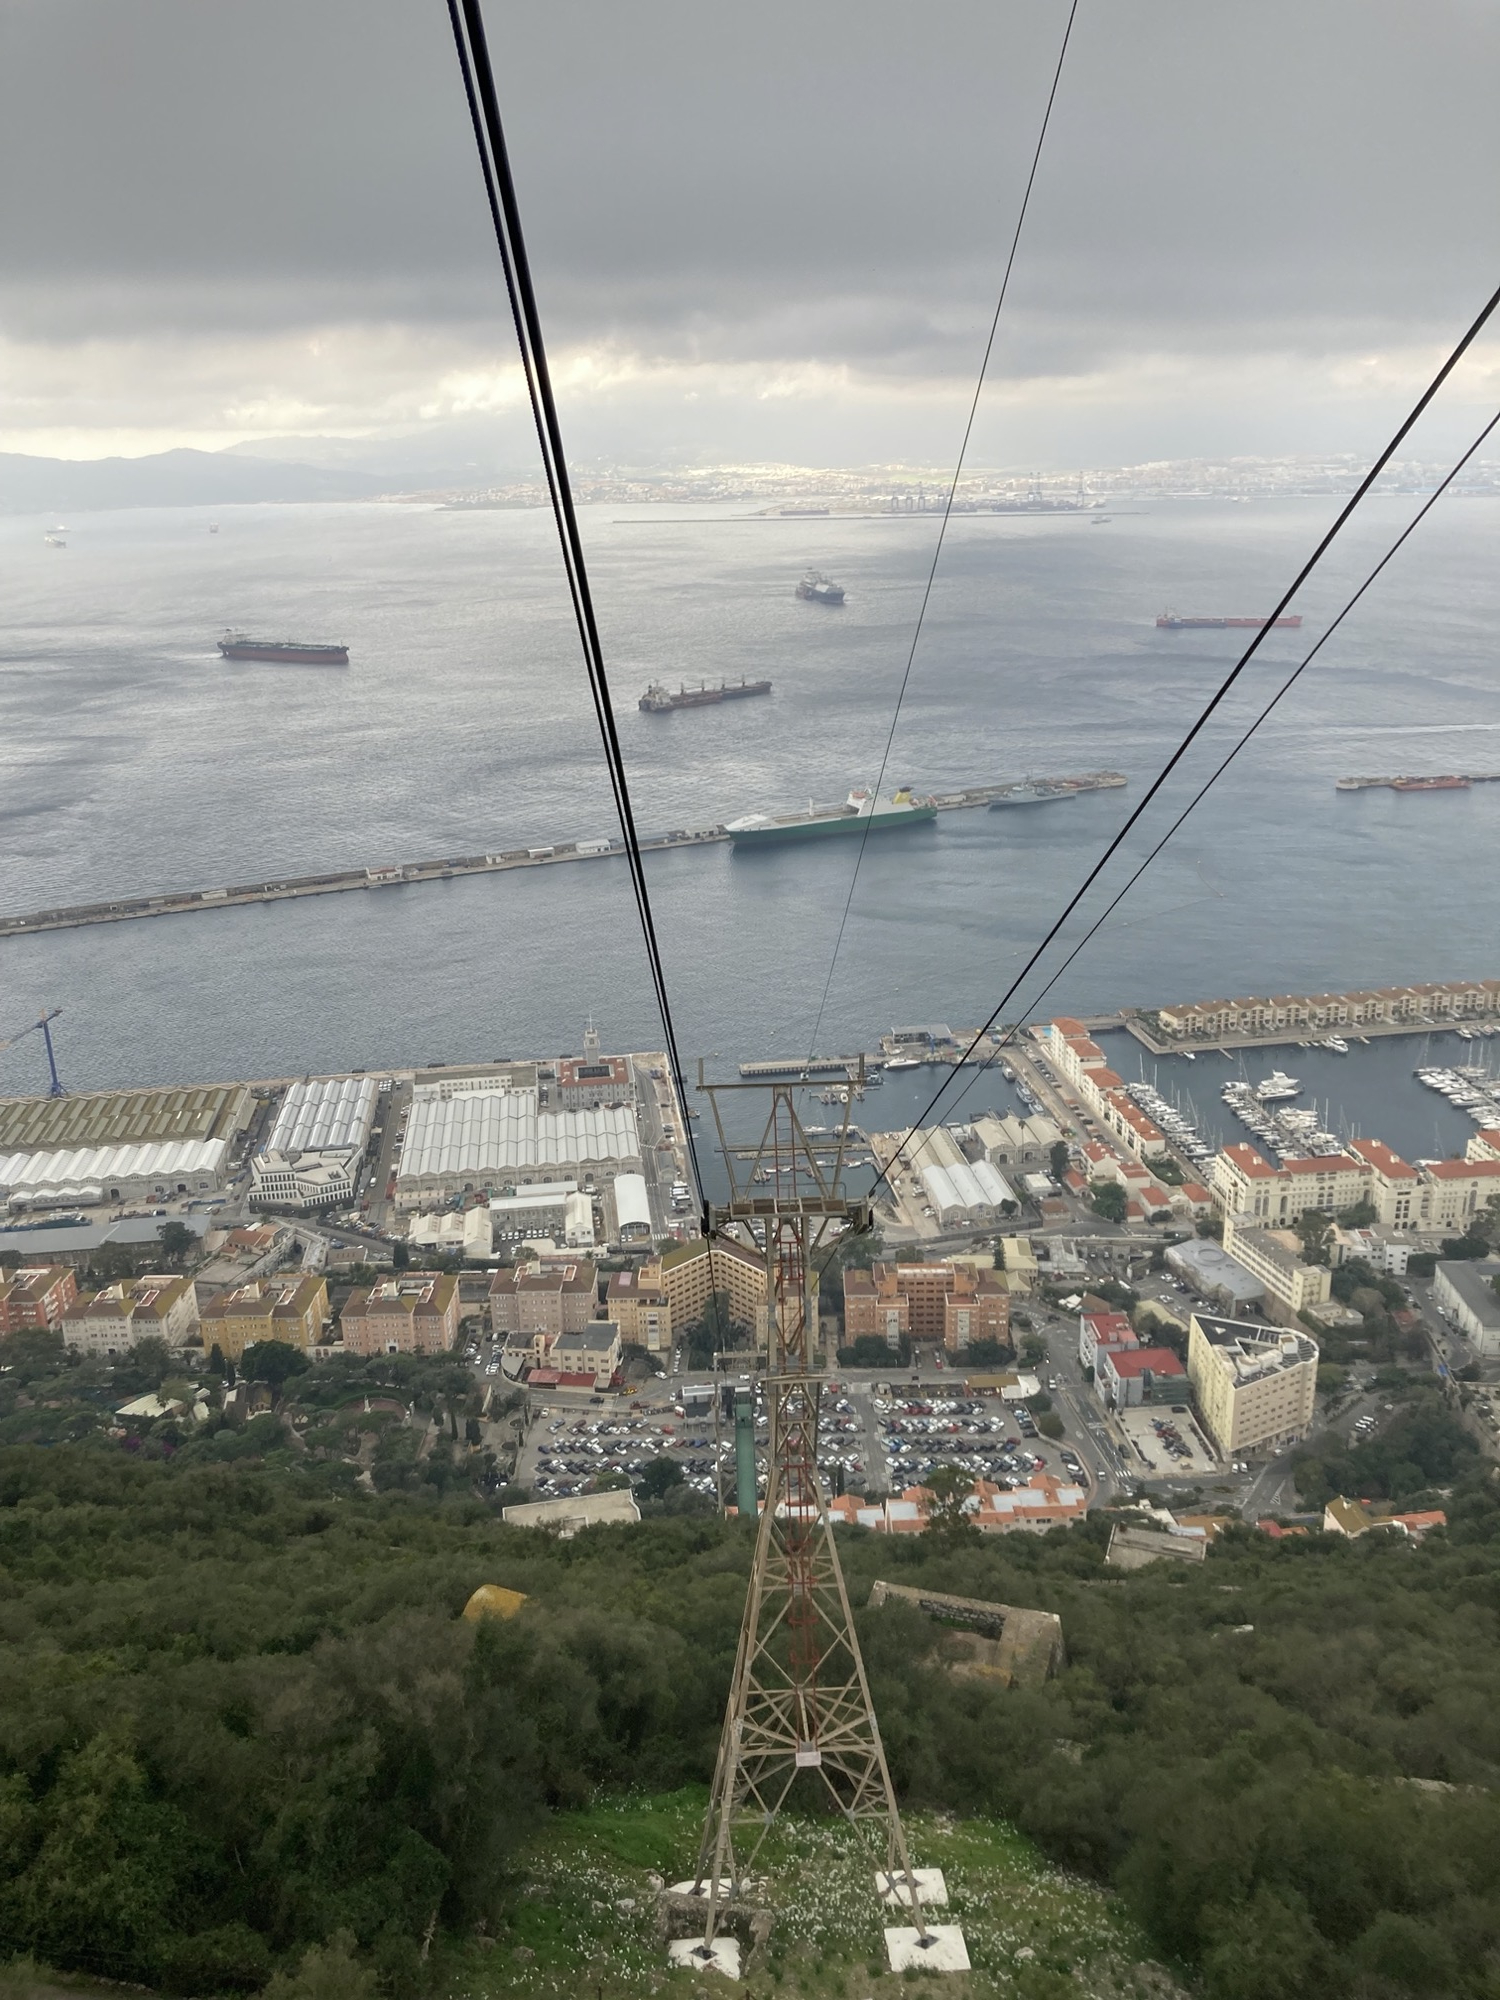 Ausblick aus der Kabine der Seilbahn auf einen Pfosten der Seilbahn, ebenerdig ist die Bodenstation und der dazugehörige Parkplatz zu sehen, dahinter fünf Frachtschiffe, die die Bucht kreuzen und im Hintergrund der Containerhafen und die Stadt Algeciras